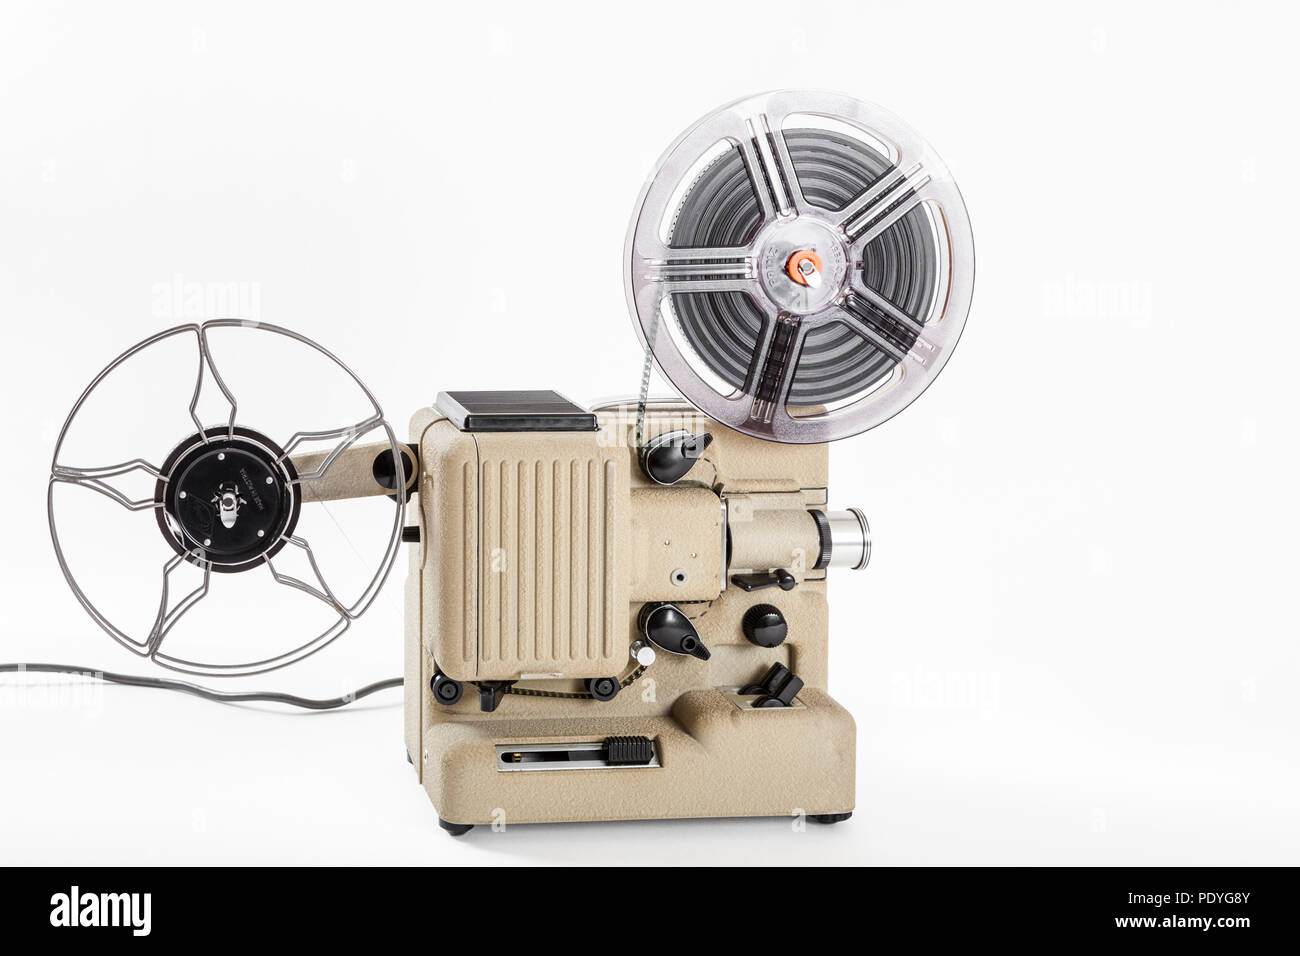 1960 projecteur. Eumig P8 novo automatique 8mm film cinéma vidéo projecteur  Photo Stock - Alamy